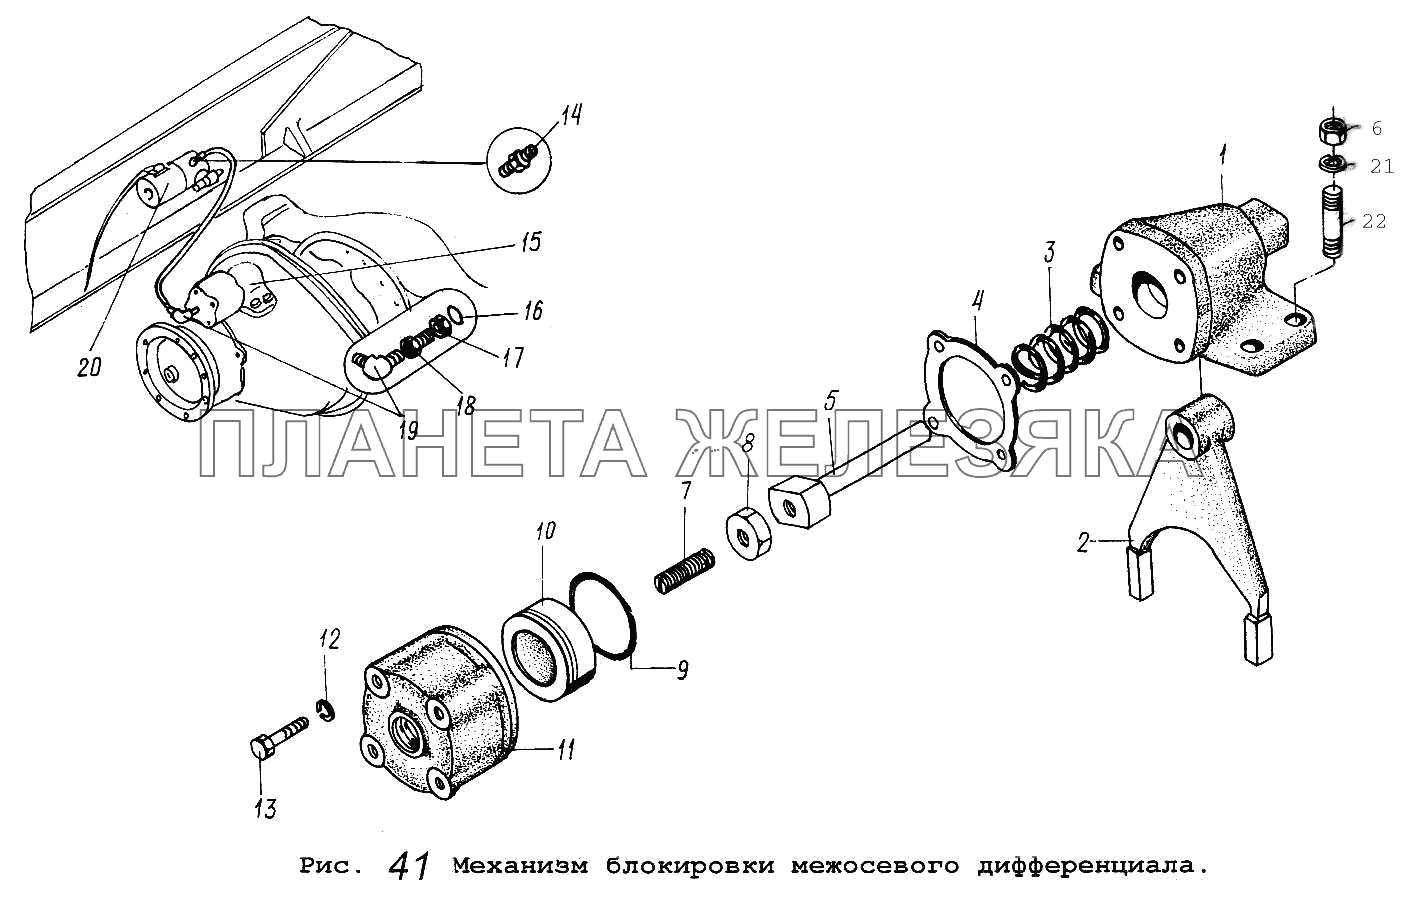 Механизм блокировки межосевого дифференциала МАЗ-54323